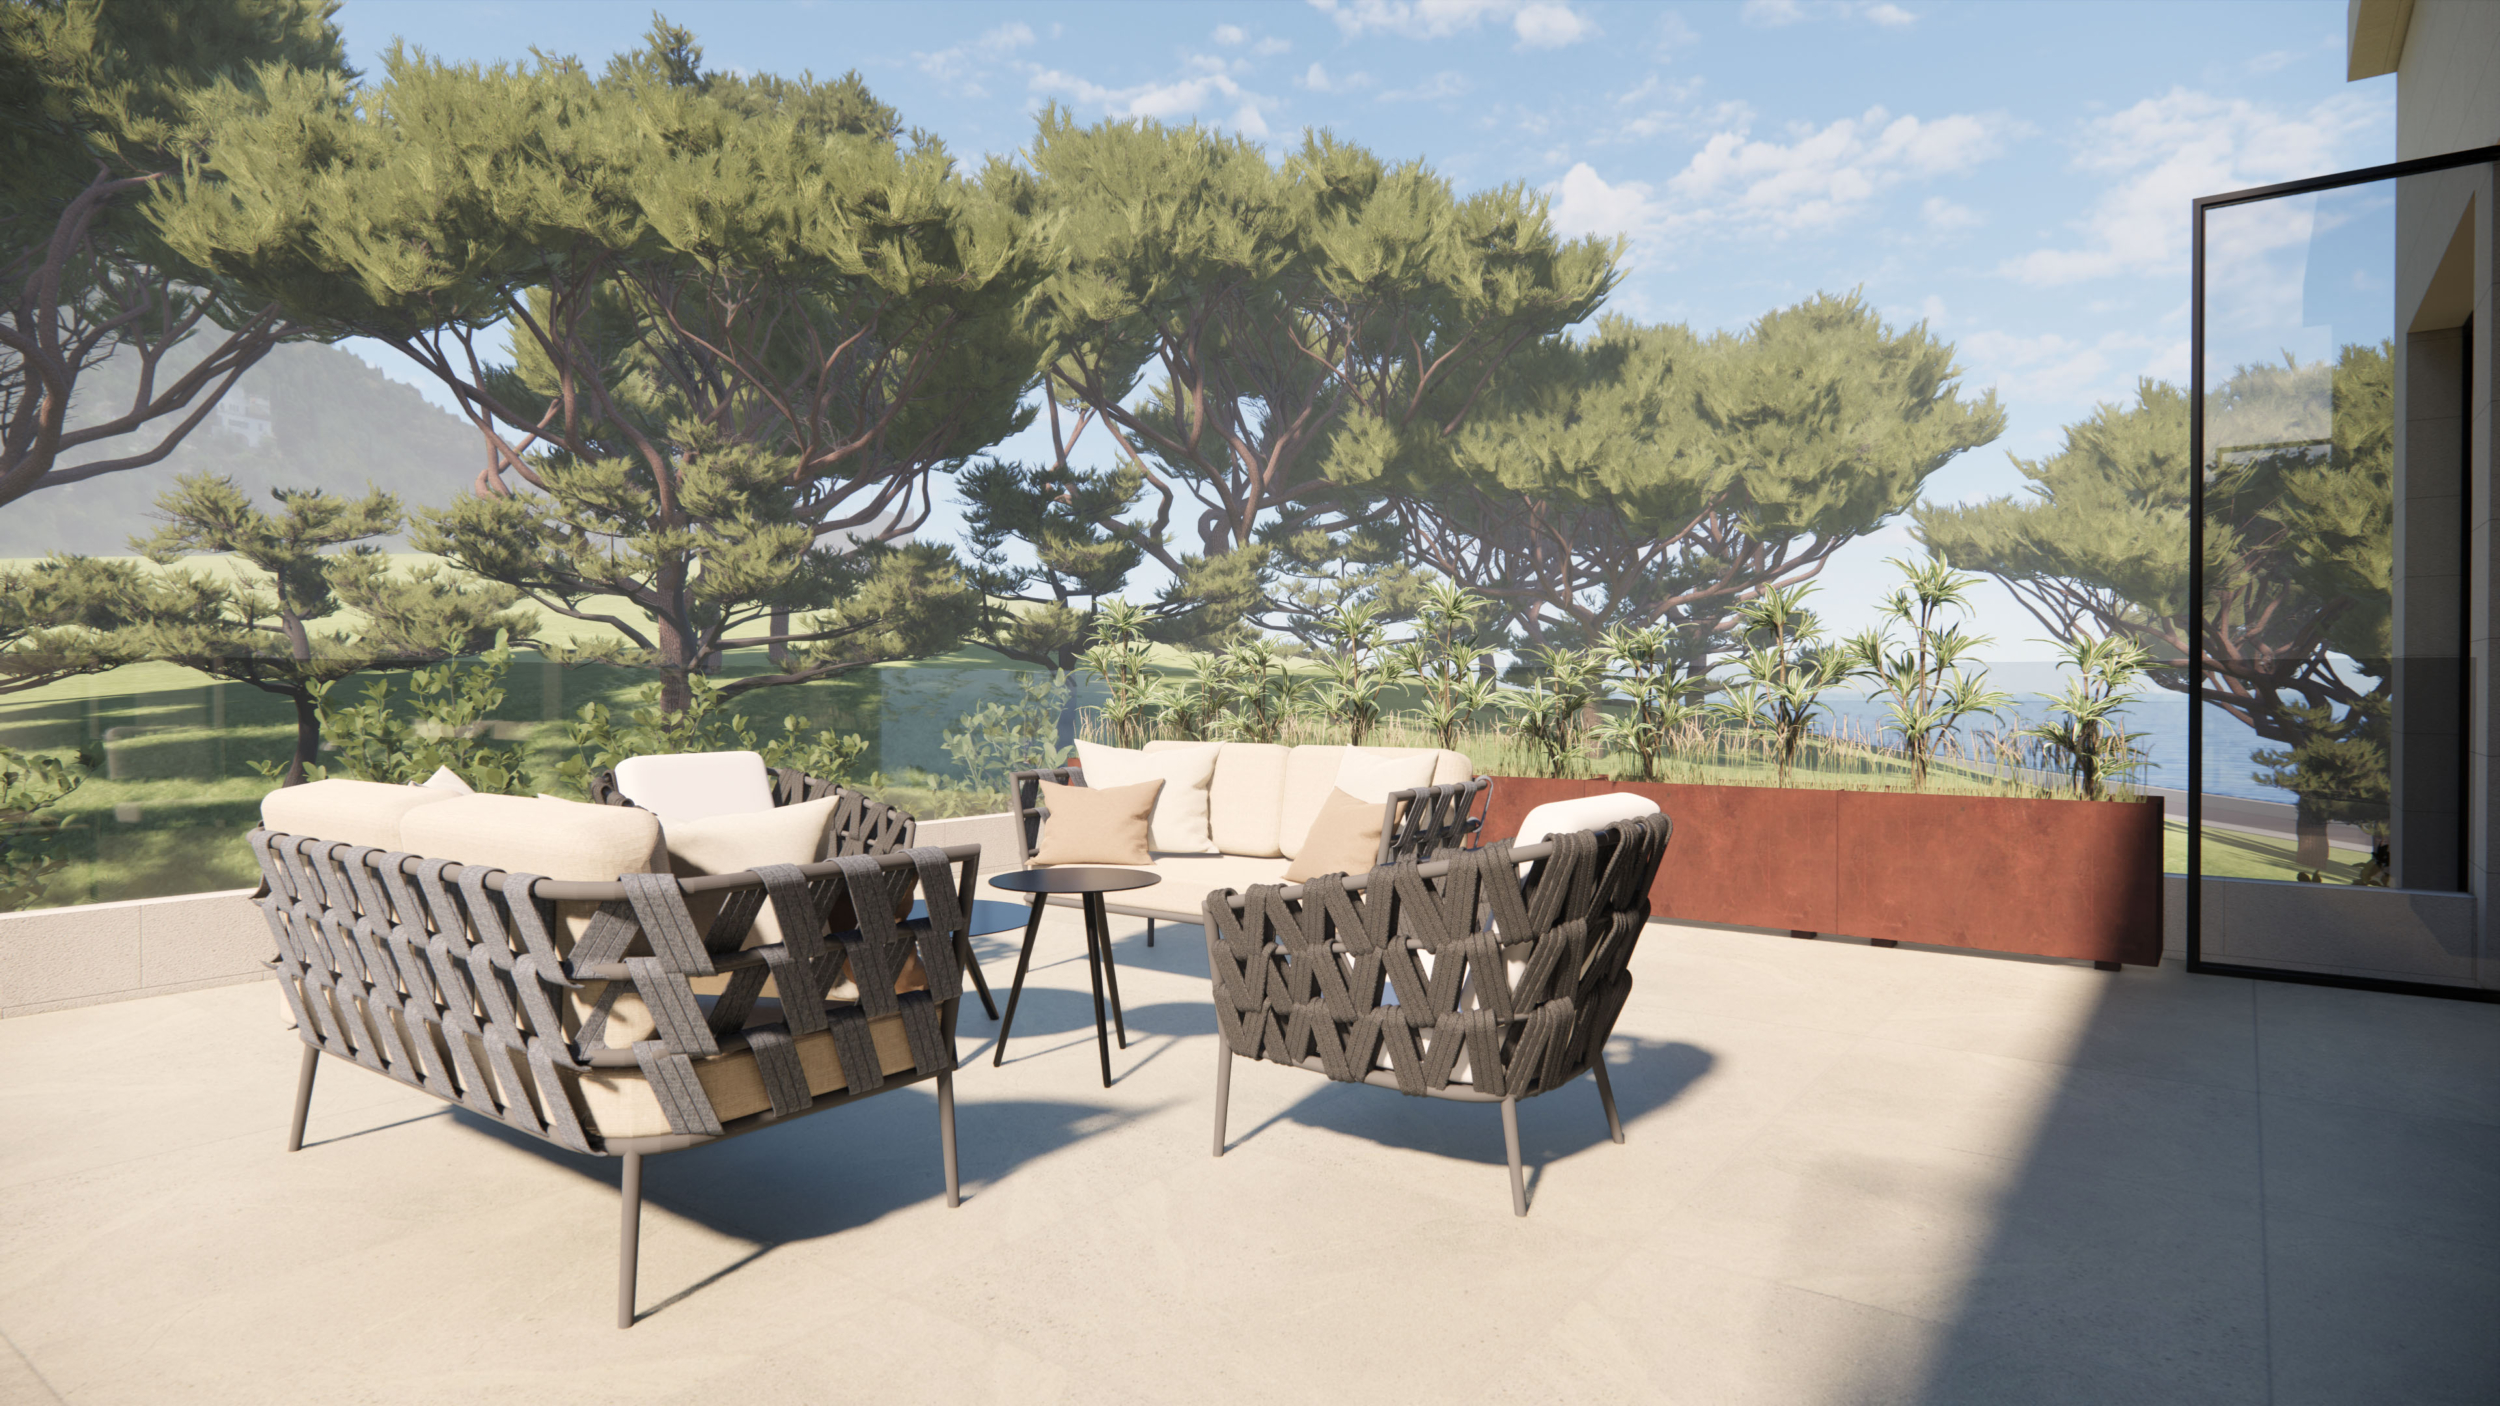 Villa Sapphire, Balcony View CGI, Linear CGI Studio